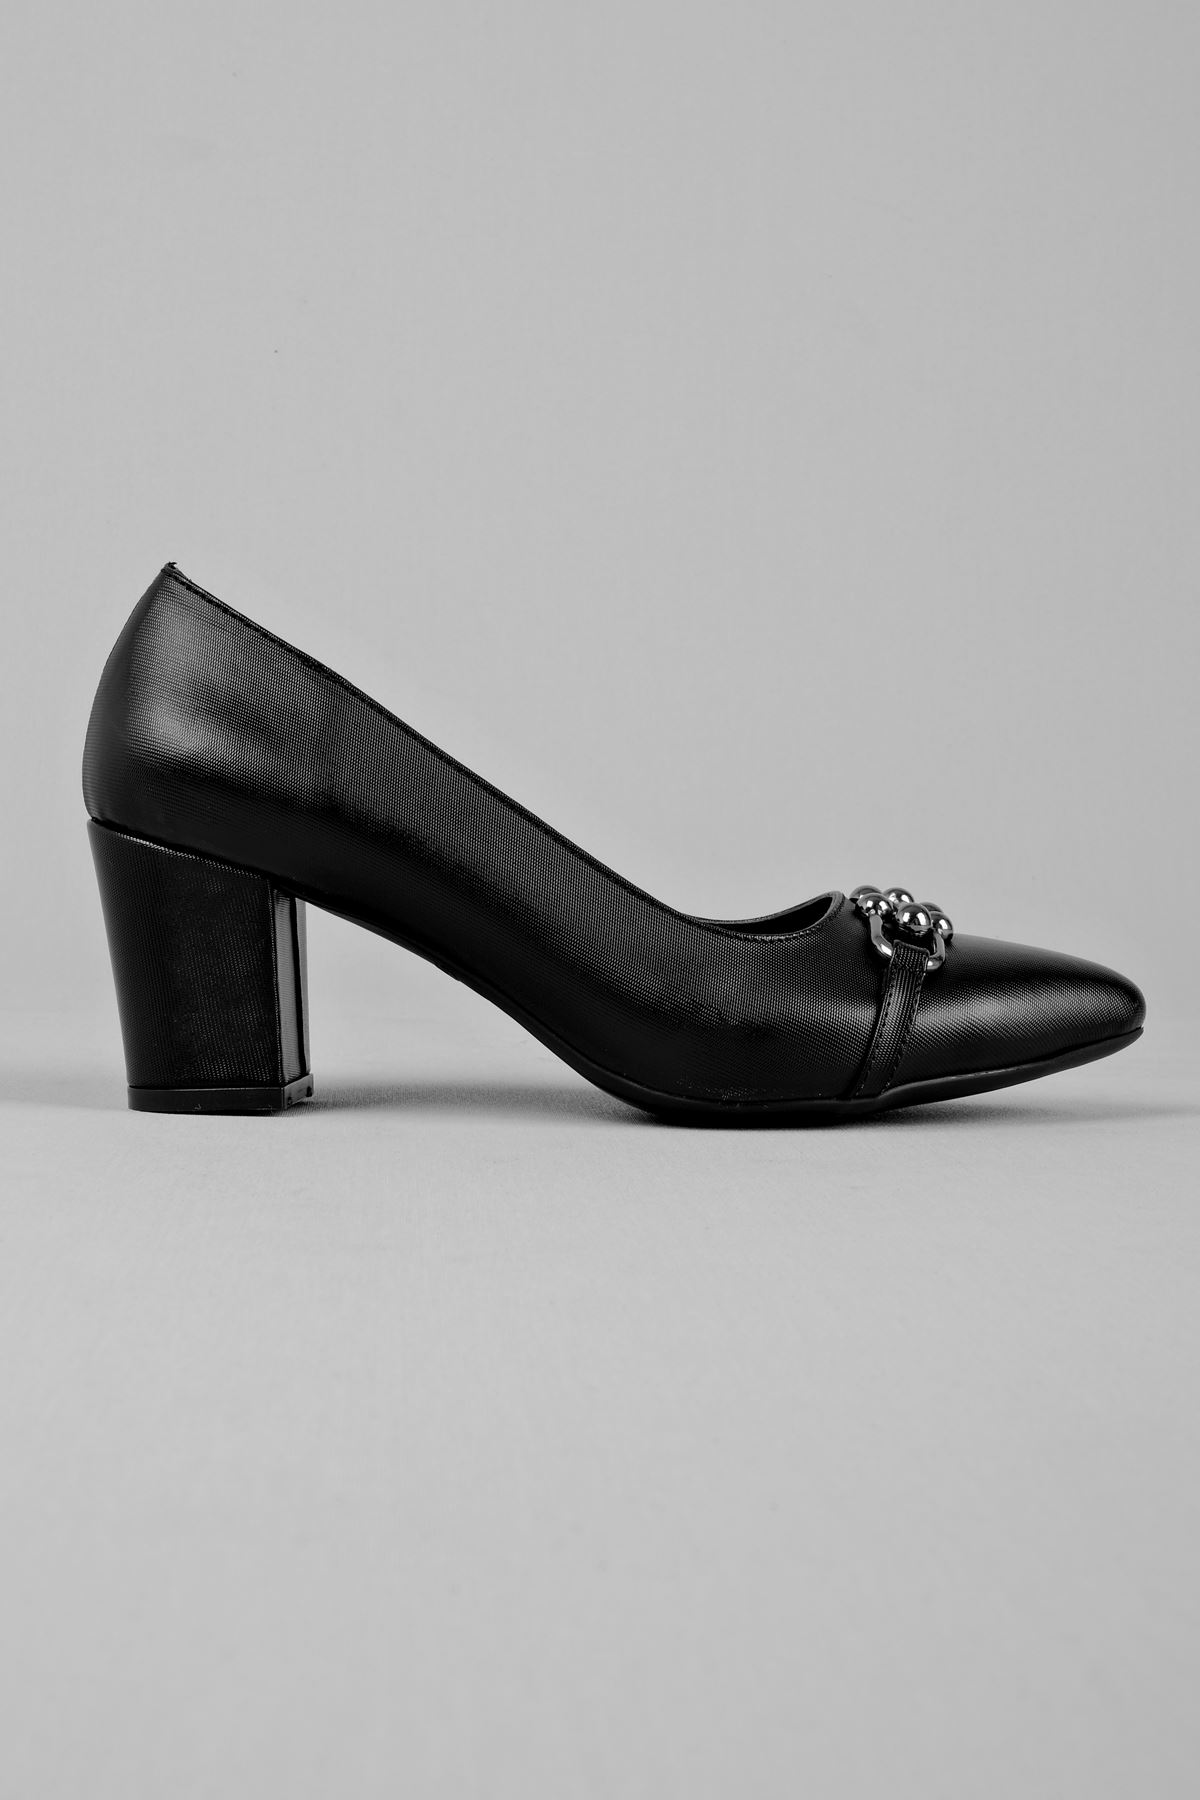 Nagite Kadın Topuklu Ayakkabı Metal Detaylı-siyah